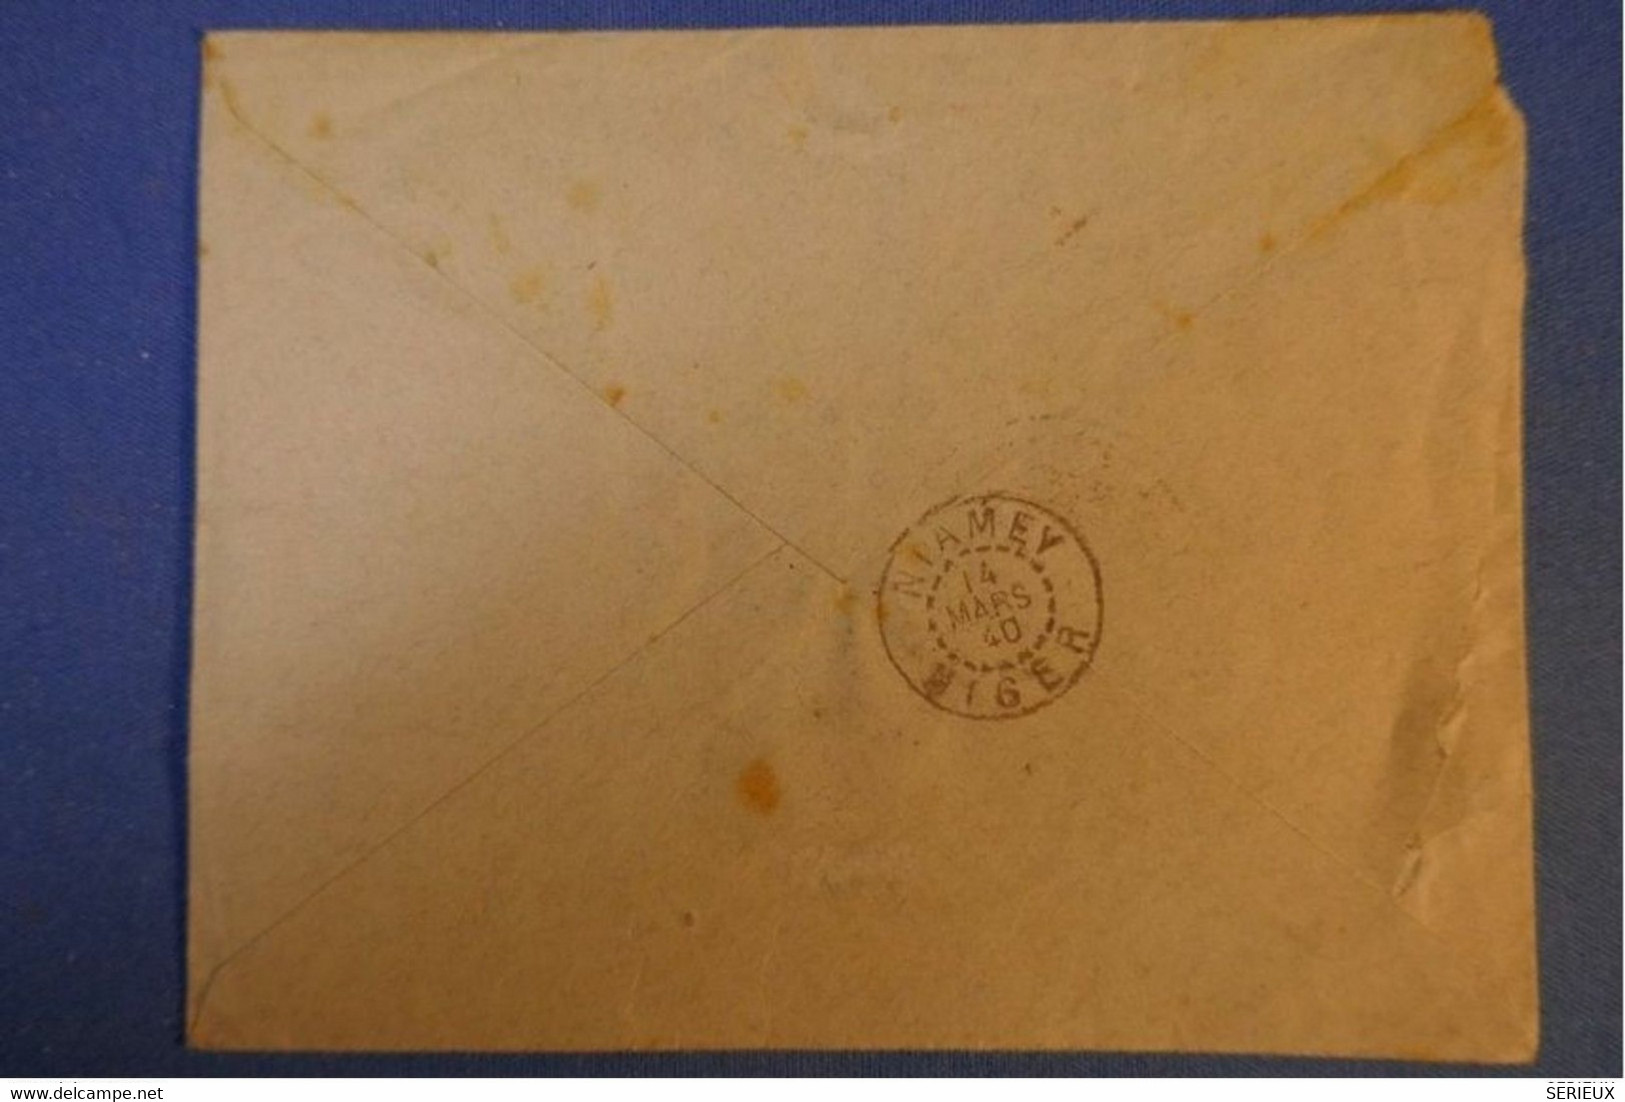 463 NIGER LETTRE RARE RECOM. 1940 FRANC MILITAIRE +CONTROLE VOIE SAHARIENNE NIAMEY   BRANNE FRANCE +AFFRANCH INTERESSANT - Storia Postale